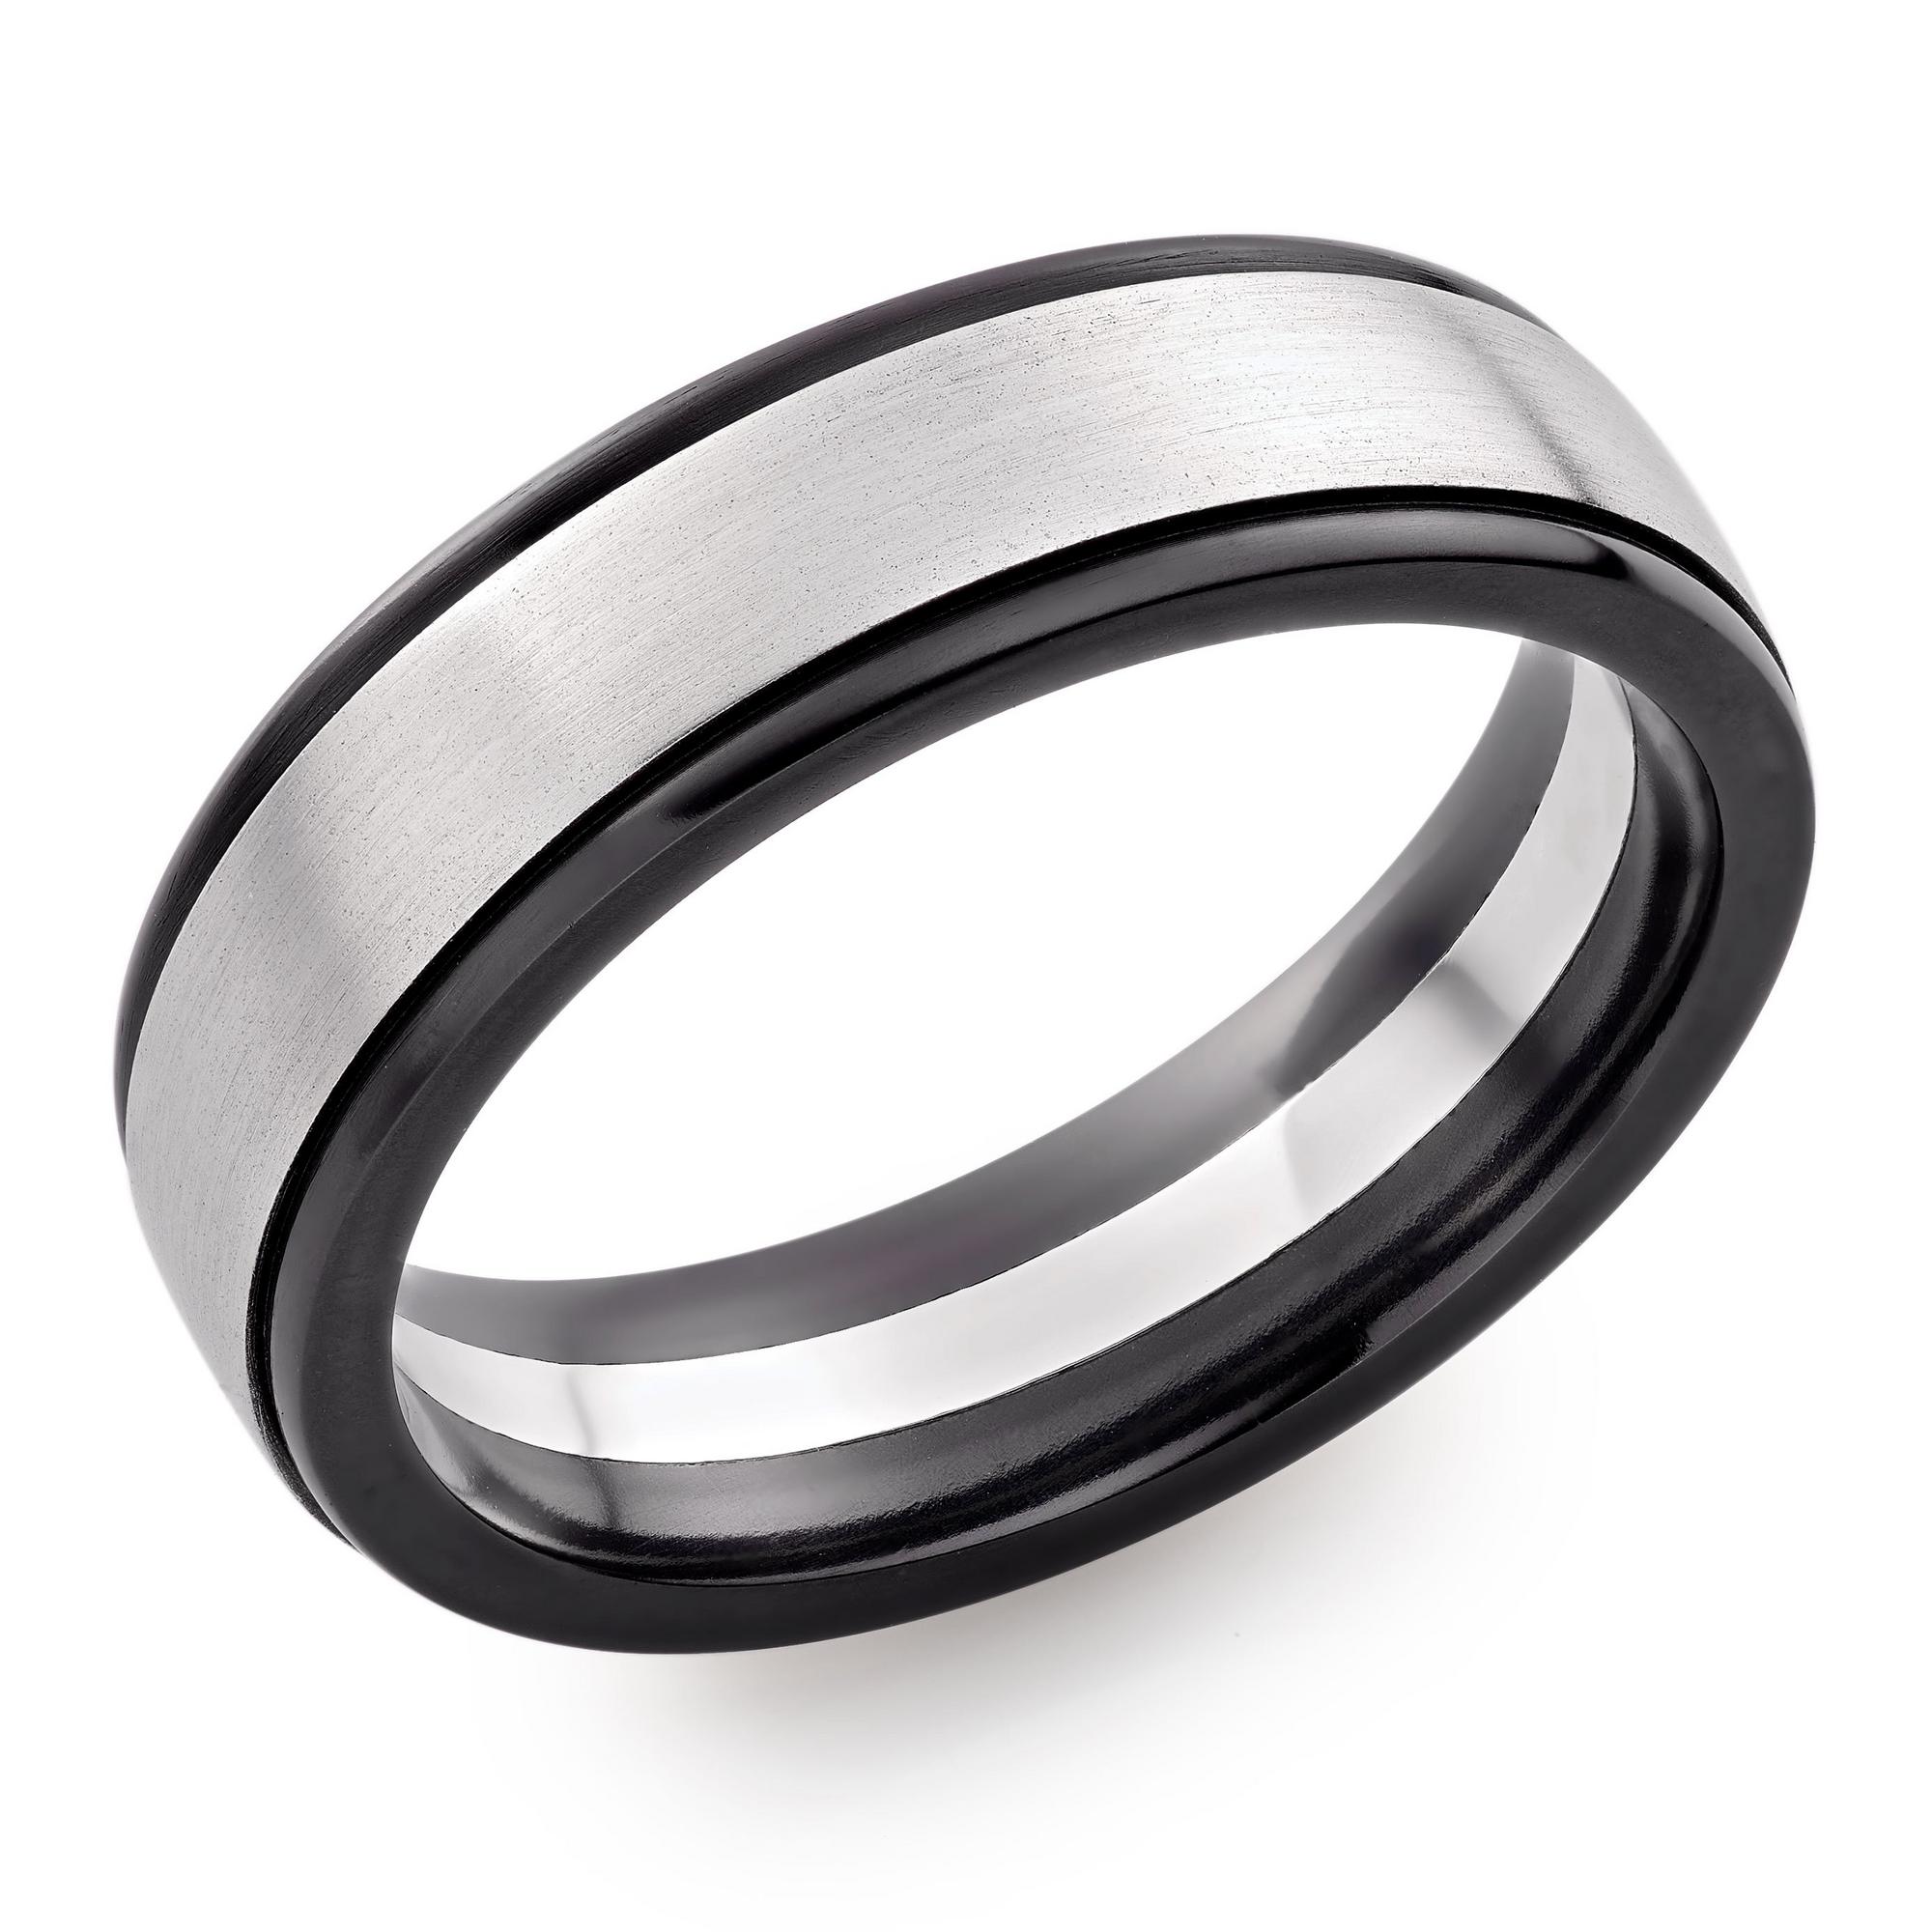 Platinum and Zirconium Men’s Wedding Ring